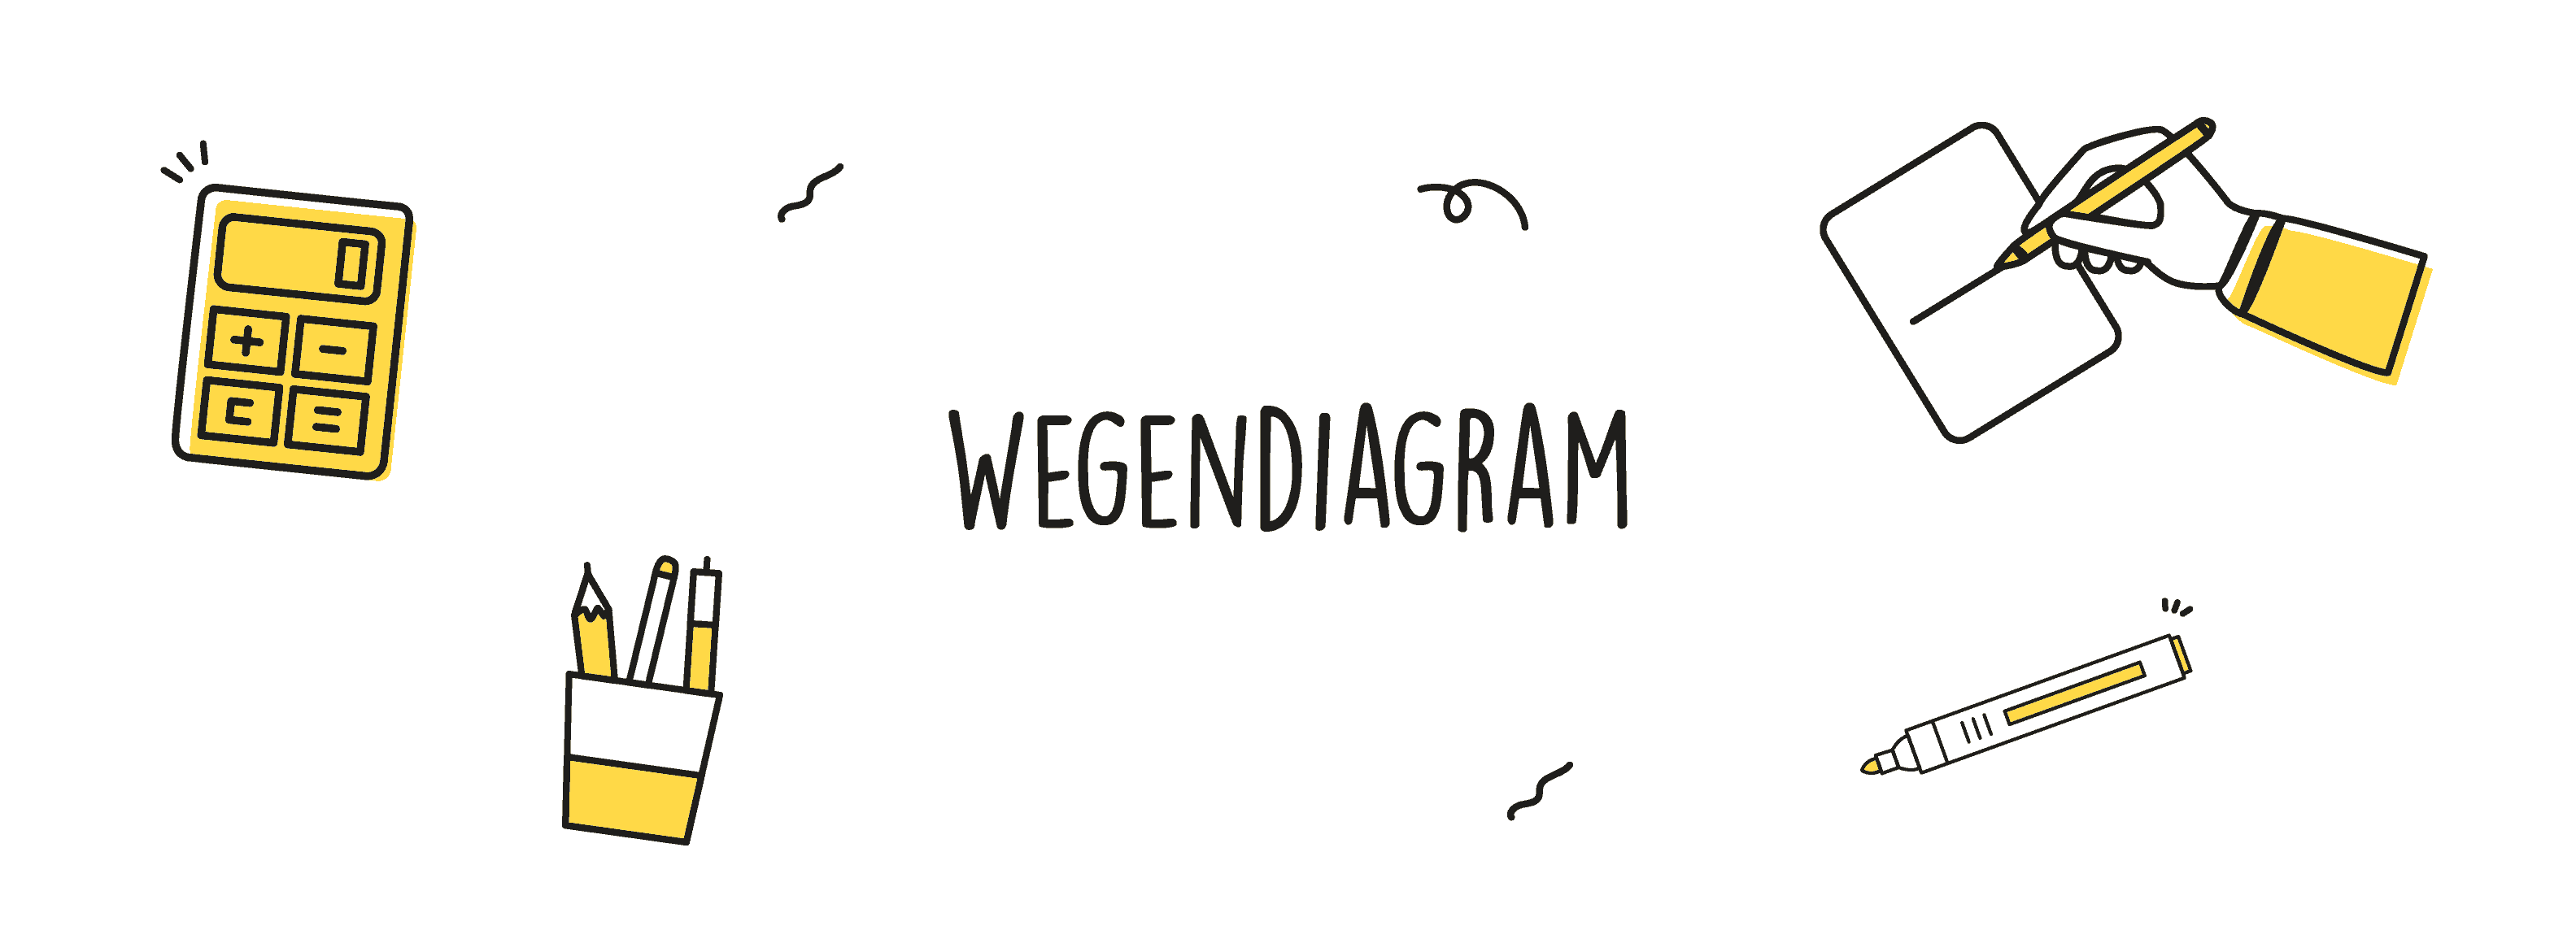 Wegendiagram